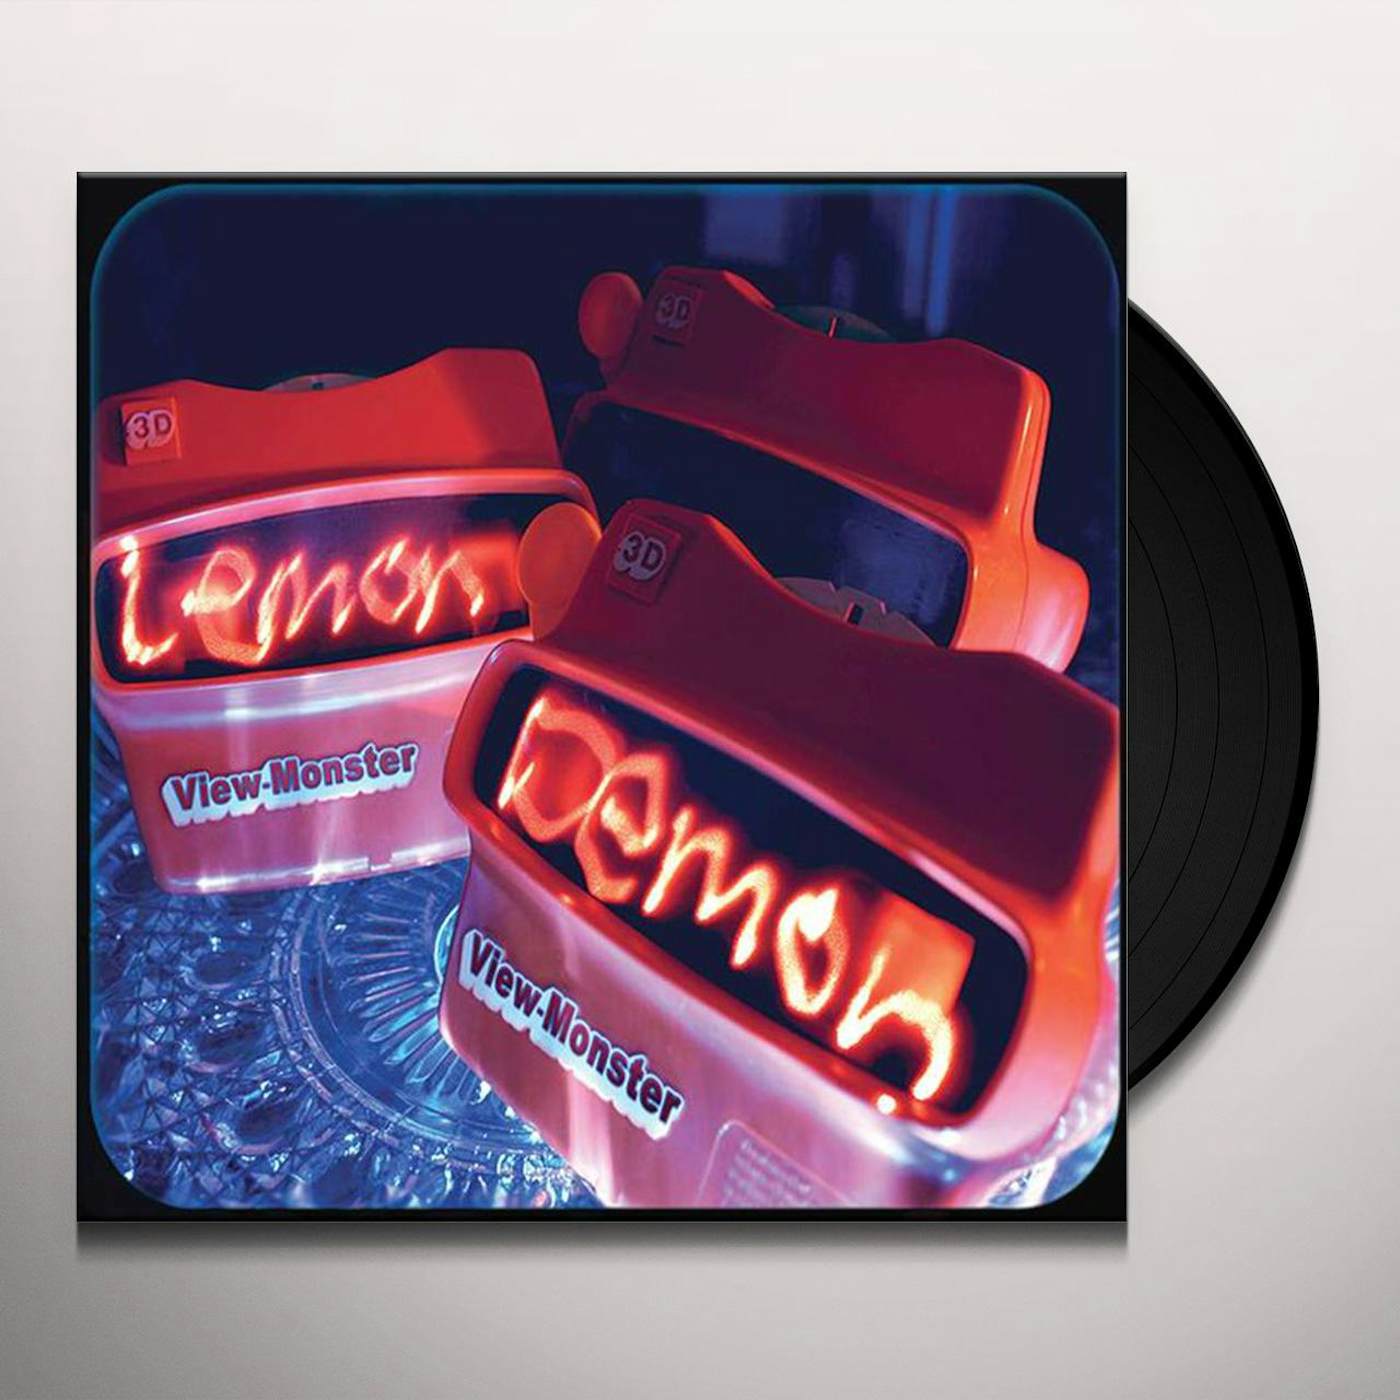 Lemon Demon View-Monster Vinyl Record